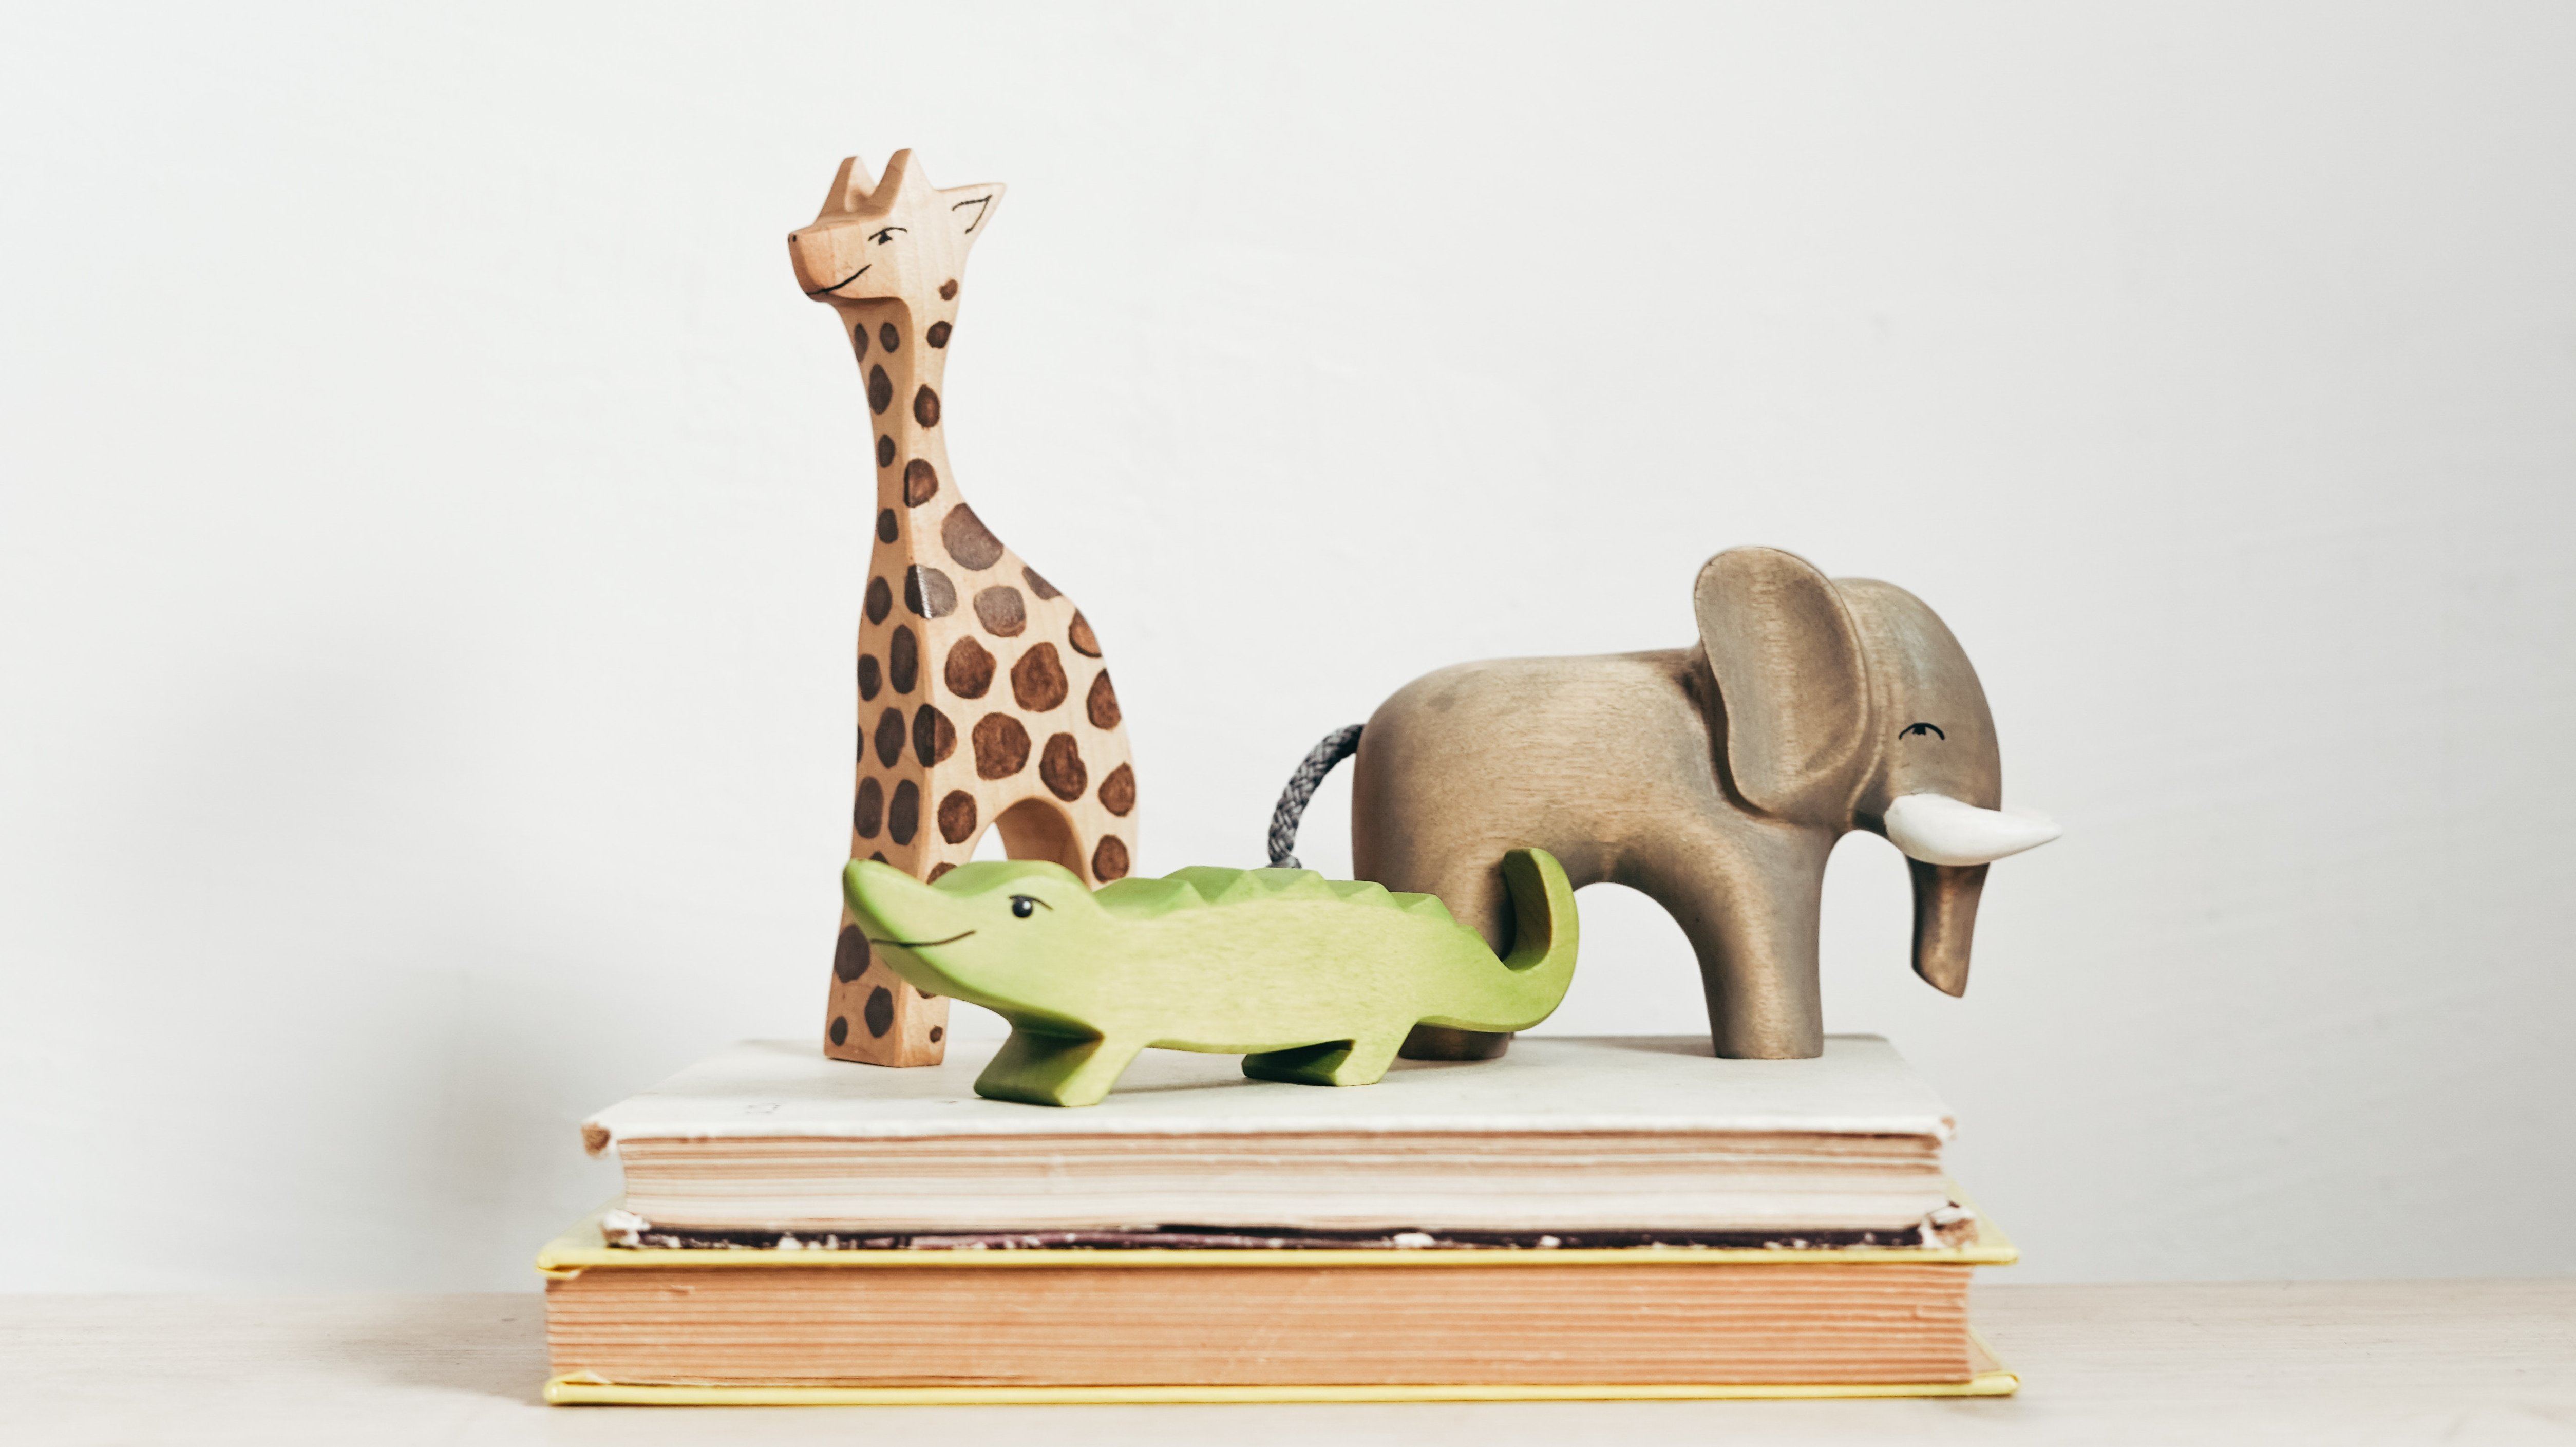 Das Bild zeigt drei freundliche blickende Holzspielfiguren. Eine Giraffe, einen Elefanten und einen grünen Drachen, die auf zwei zugeklappten Büchern stehen.